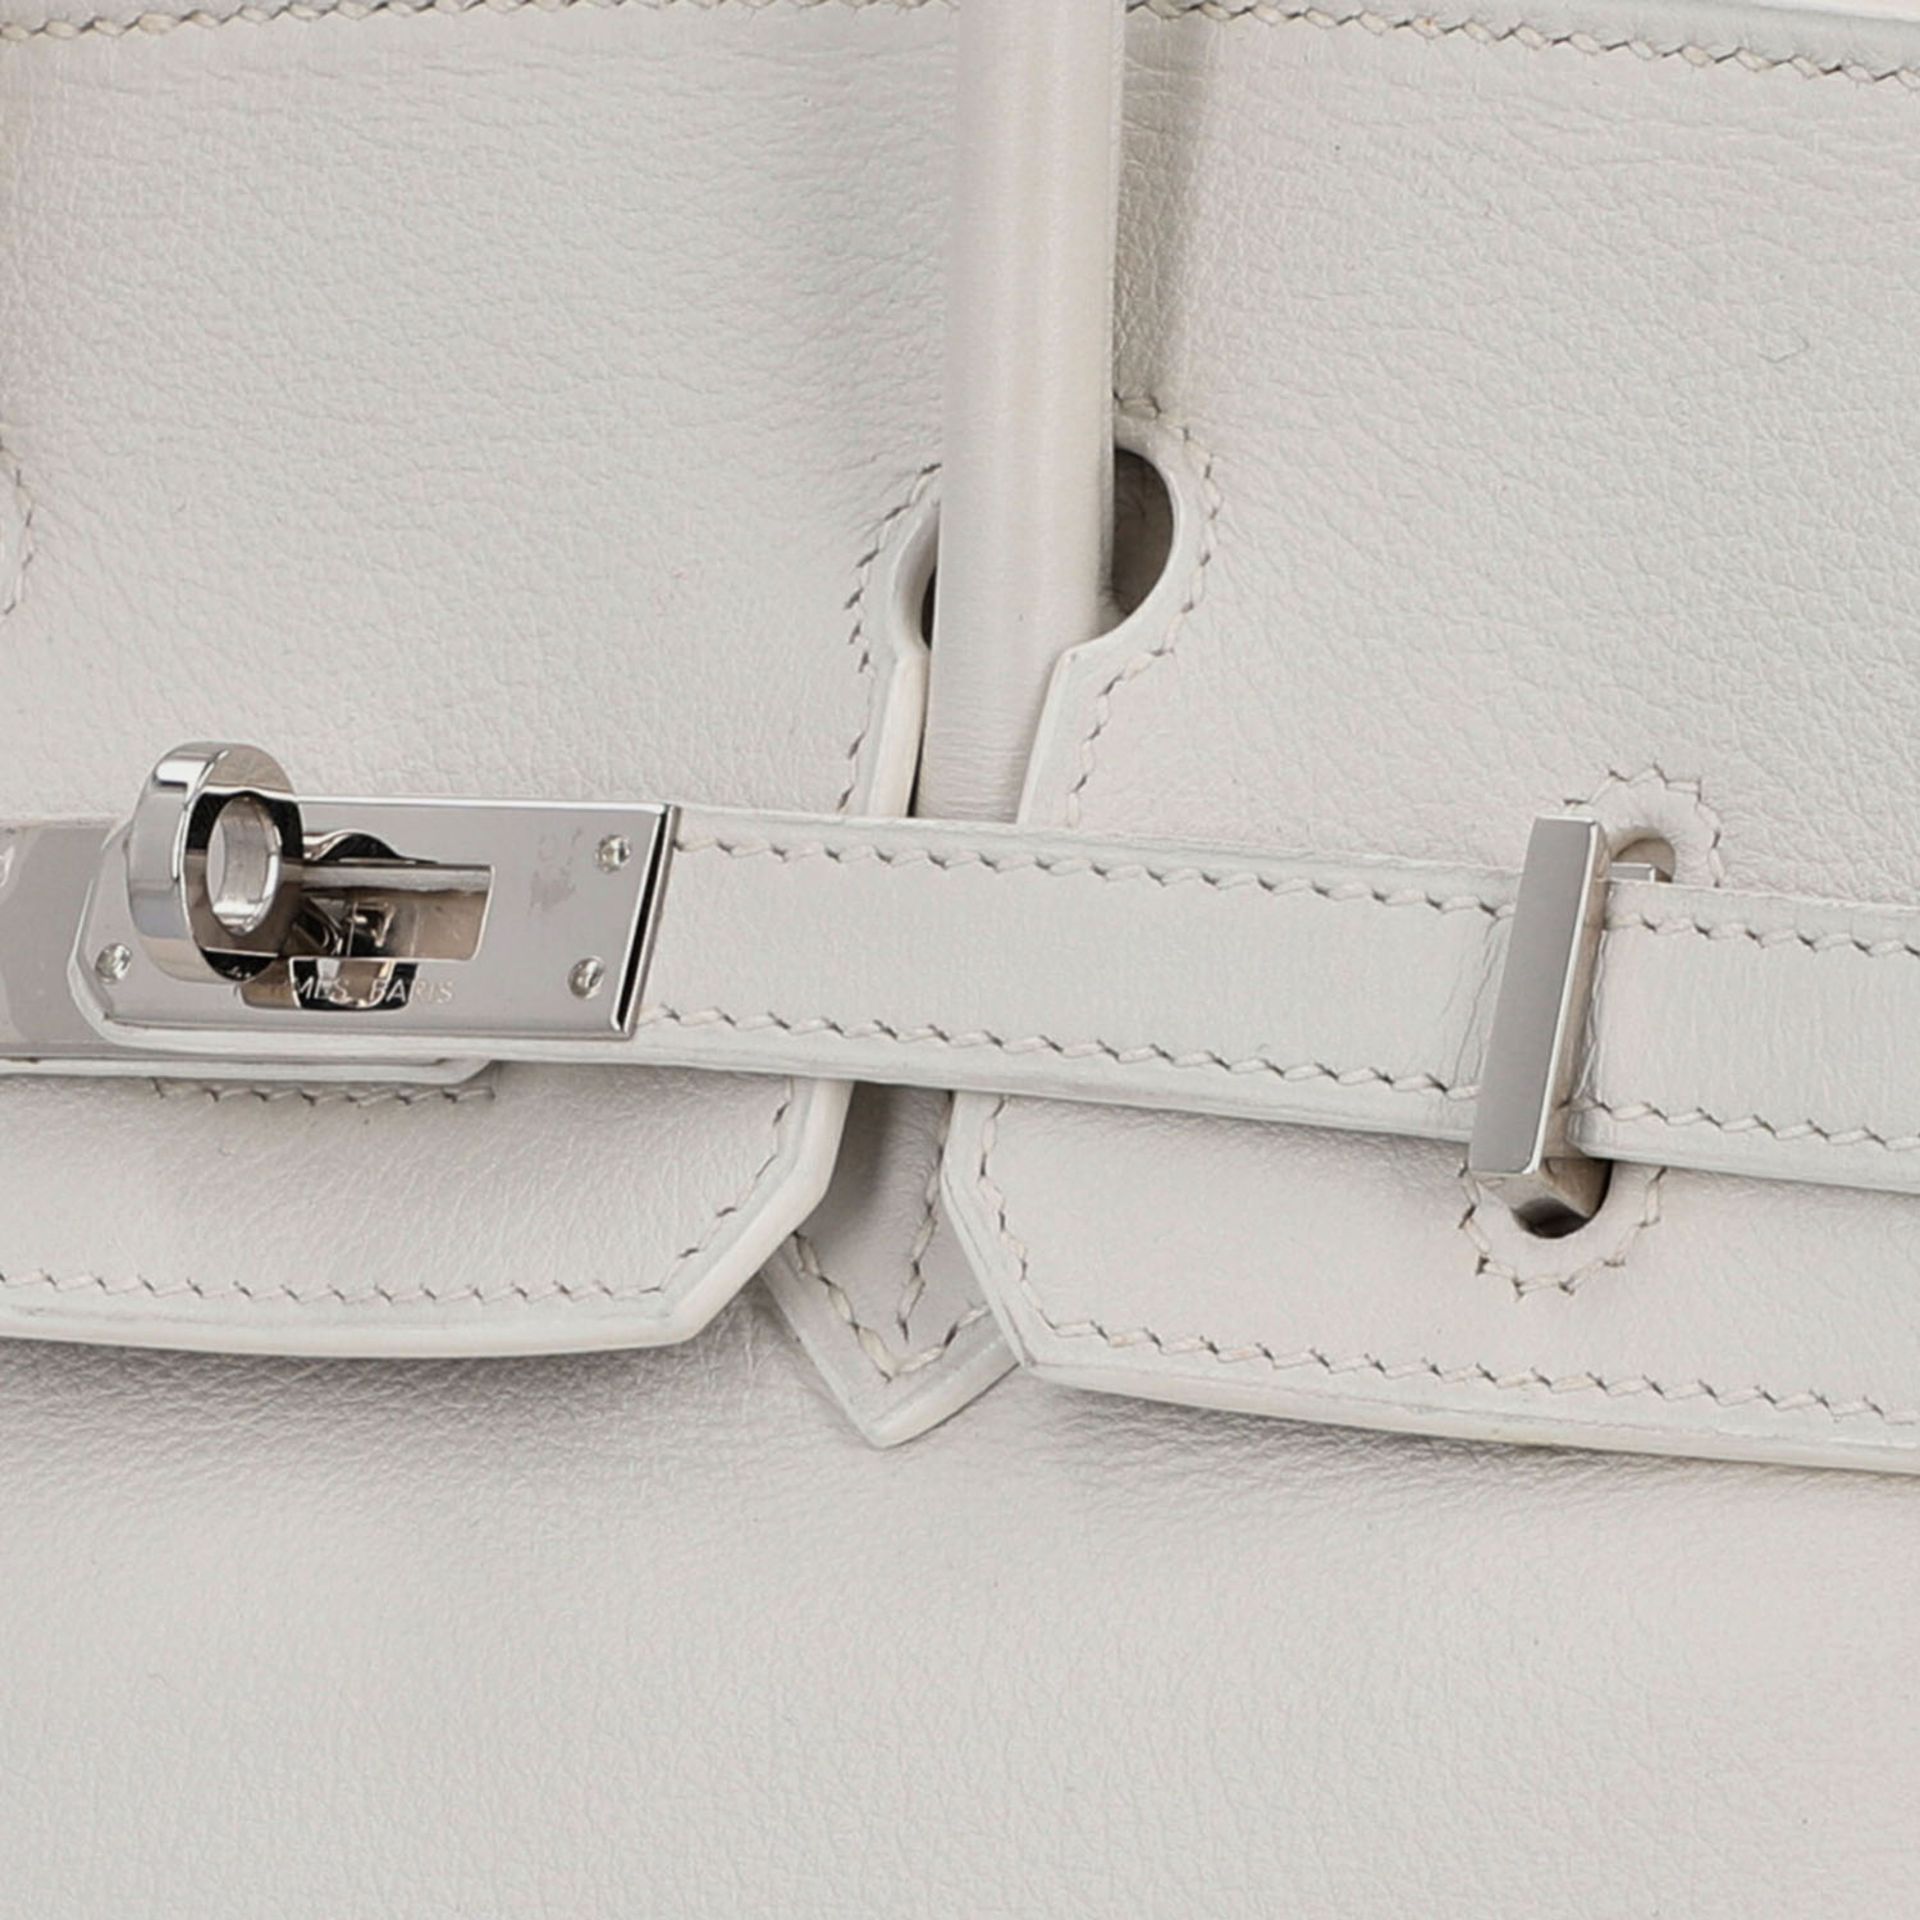 HERMÈS Handtasche "BIRKIN BAG 25", Koll. 2008.NP.: 6.500,-€. Chevre Leder in Weiß, Hardware mit - Bild 7 aus 8